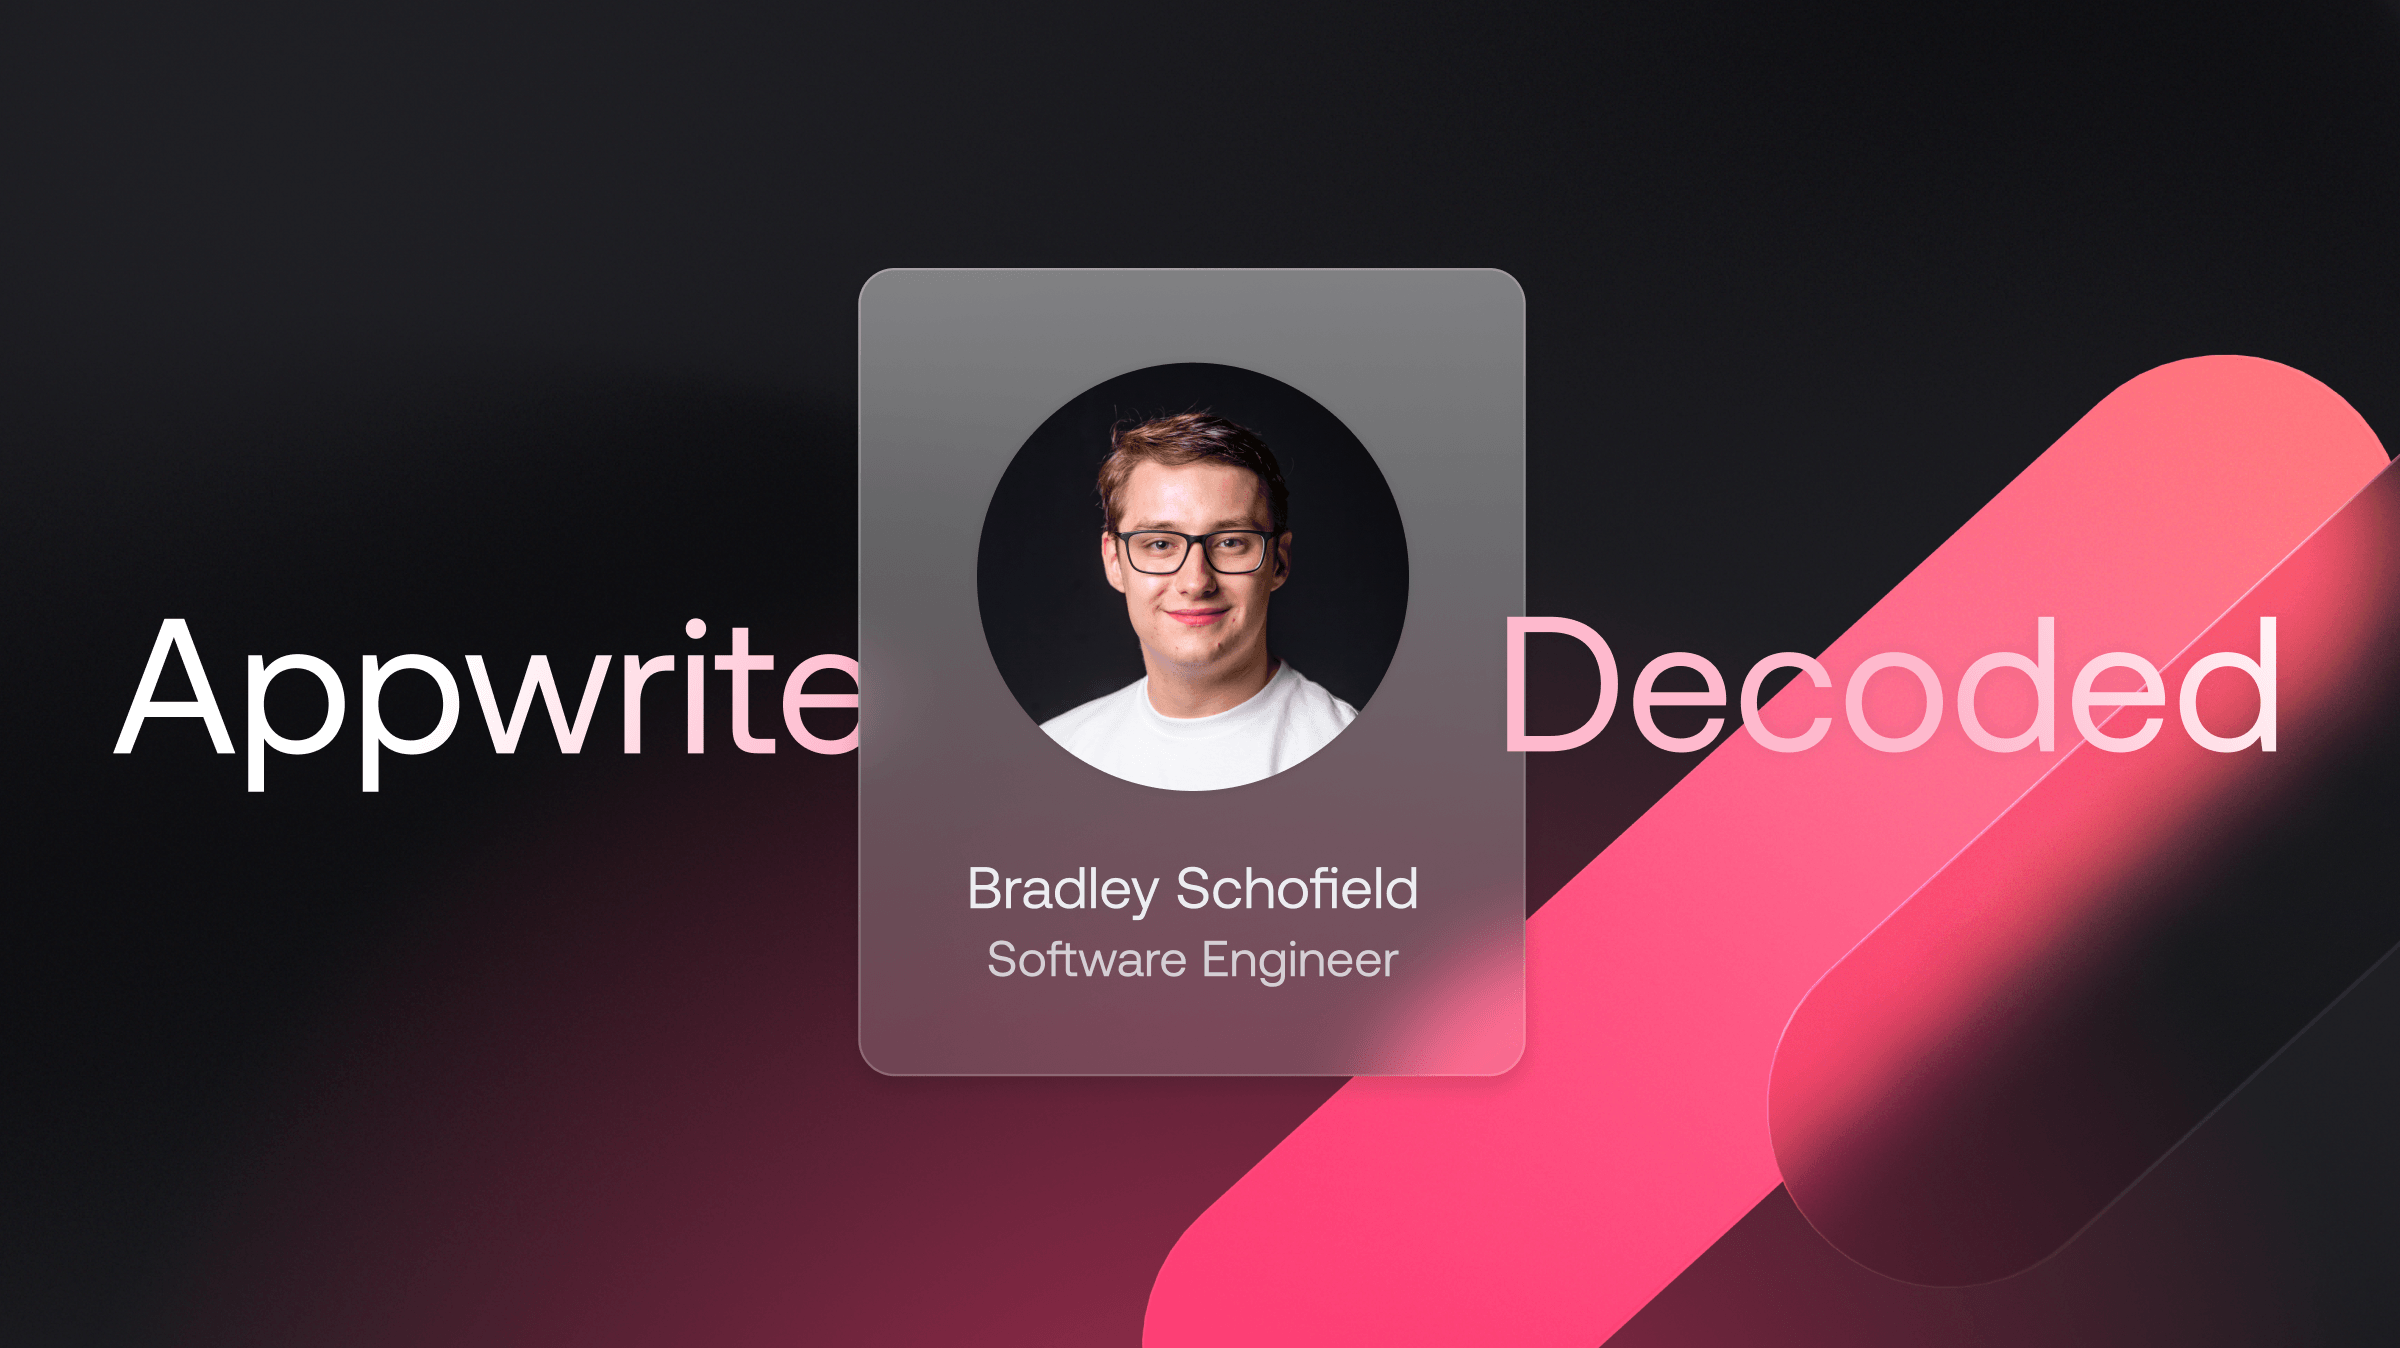 Appwrite Decoded: Bradley Schofield